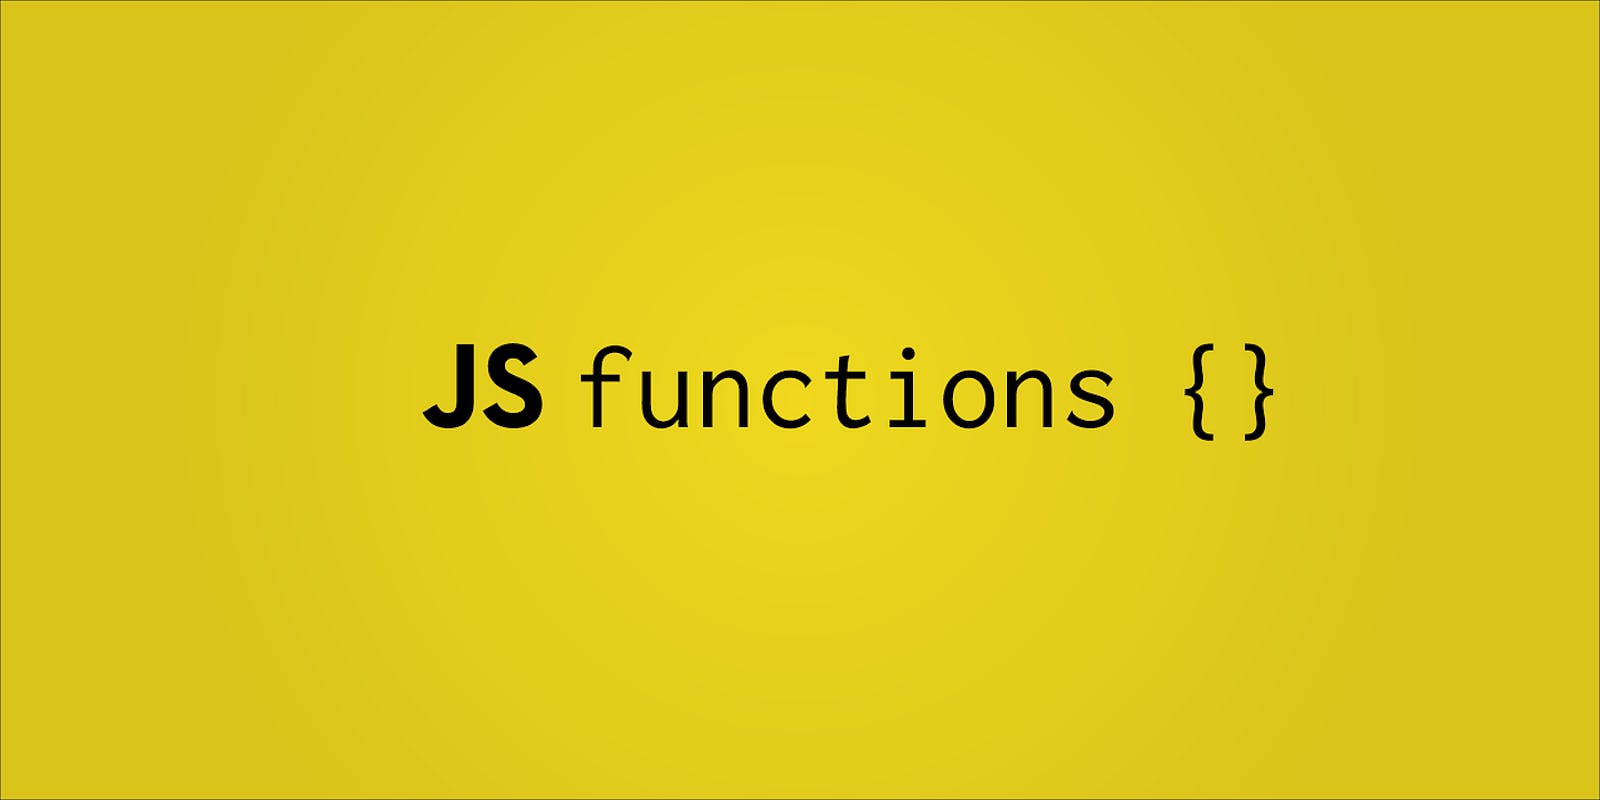 Functions in Javascript